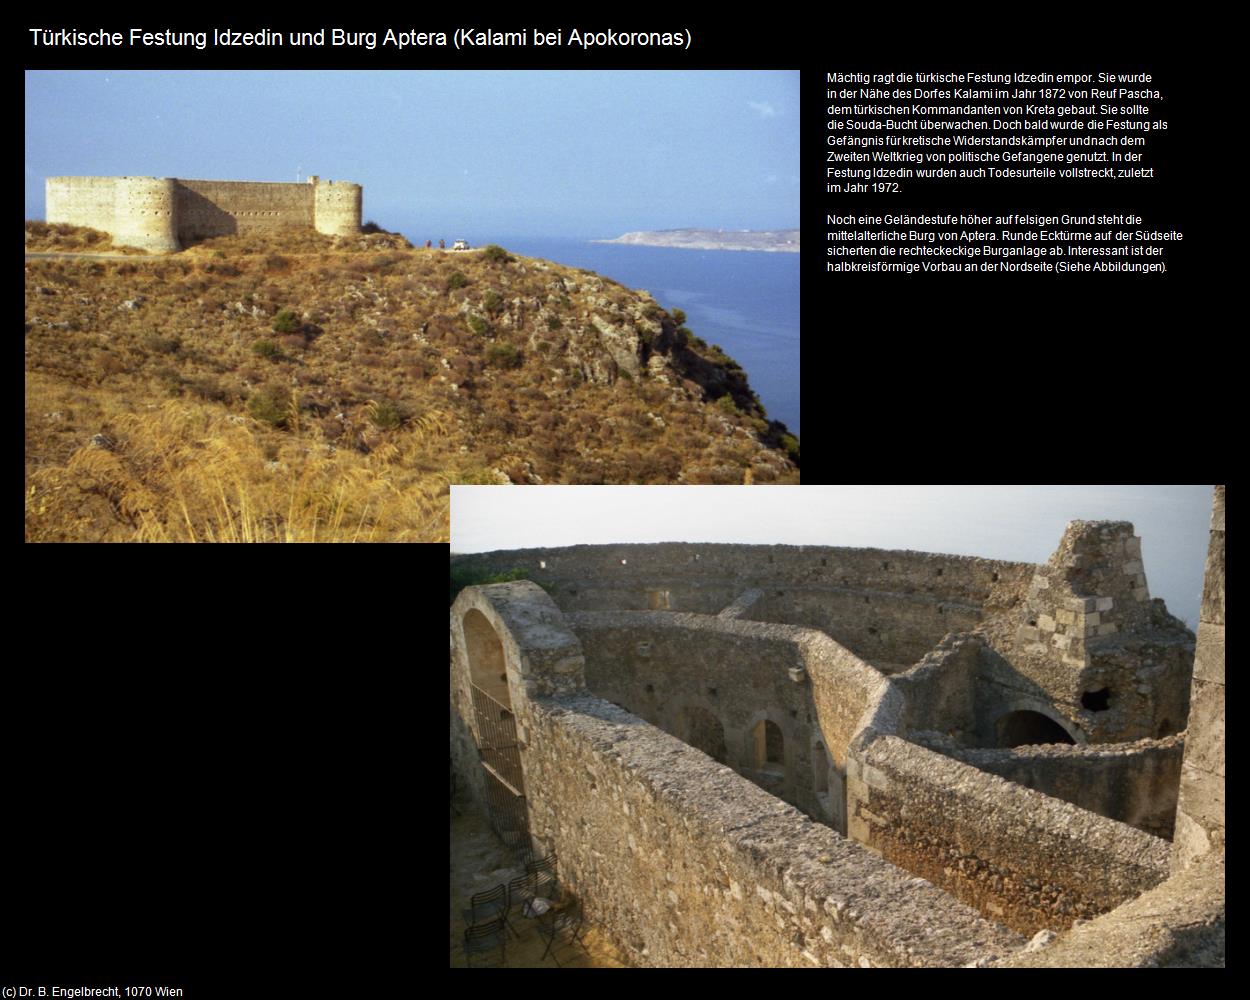 Türkische Festung Idzedin (Kalami) (Apokoronas) in KRETA und SANTORIN